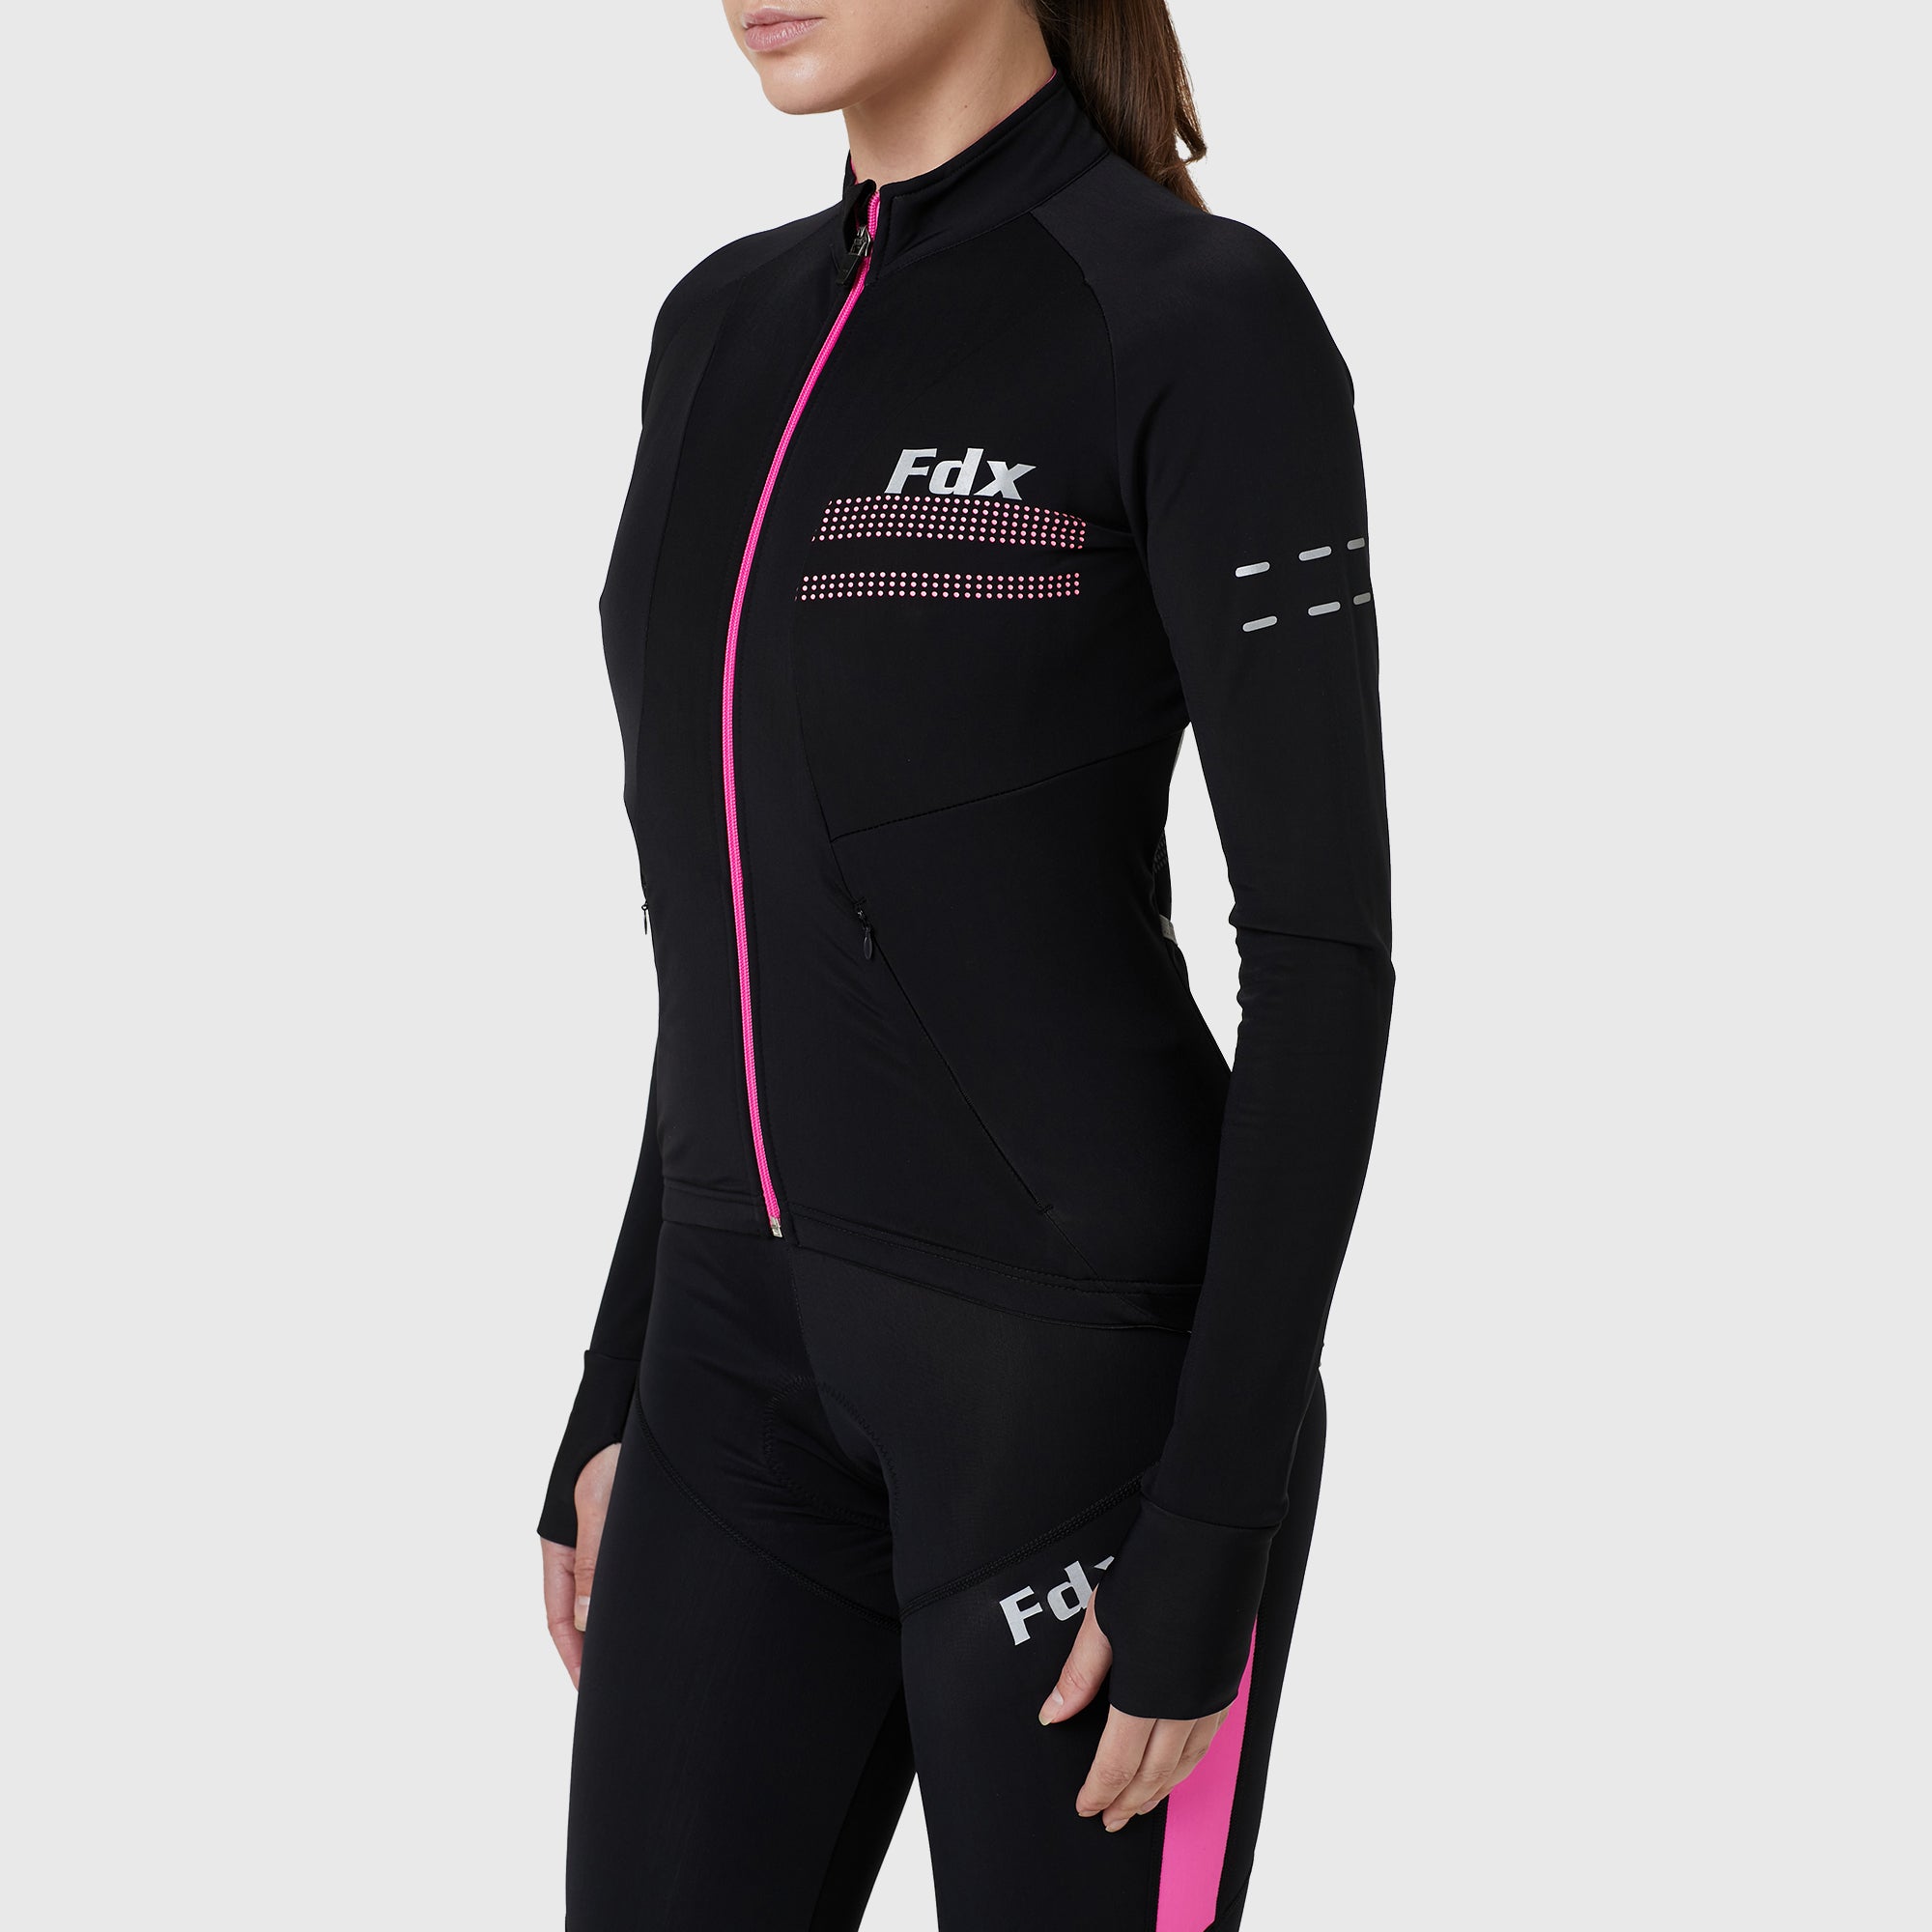 Fdx Women's Black & Pink Long Sleeve Cycling Jersey & Gel Padded Bib Tights Pants for Winter Roubaix Thermal Fleece Road Bike Wear Windproof, Hi-viz Reflectors & Pockets - Arch